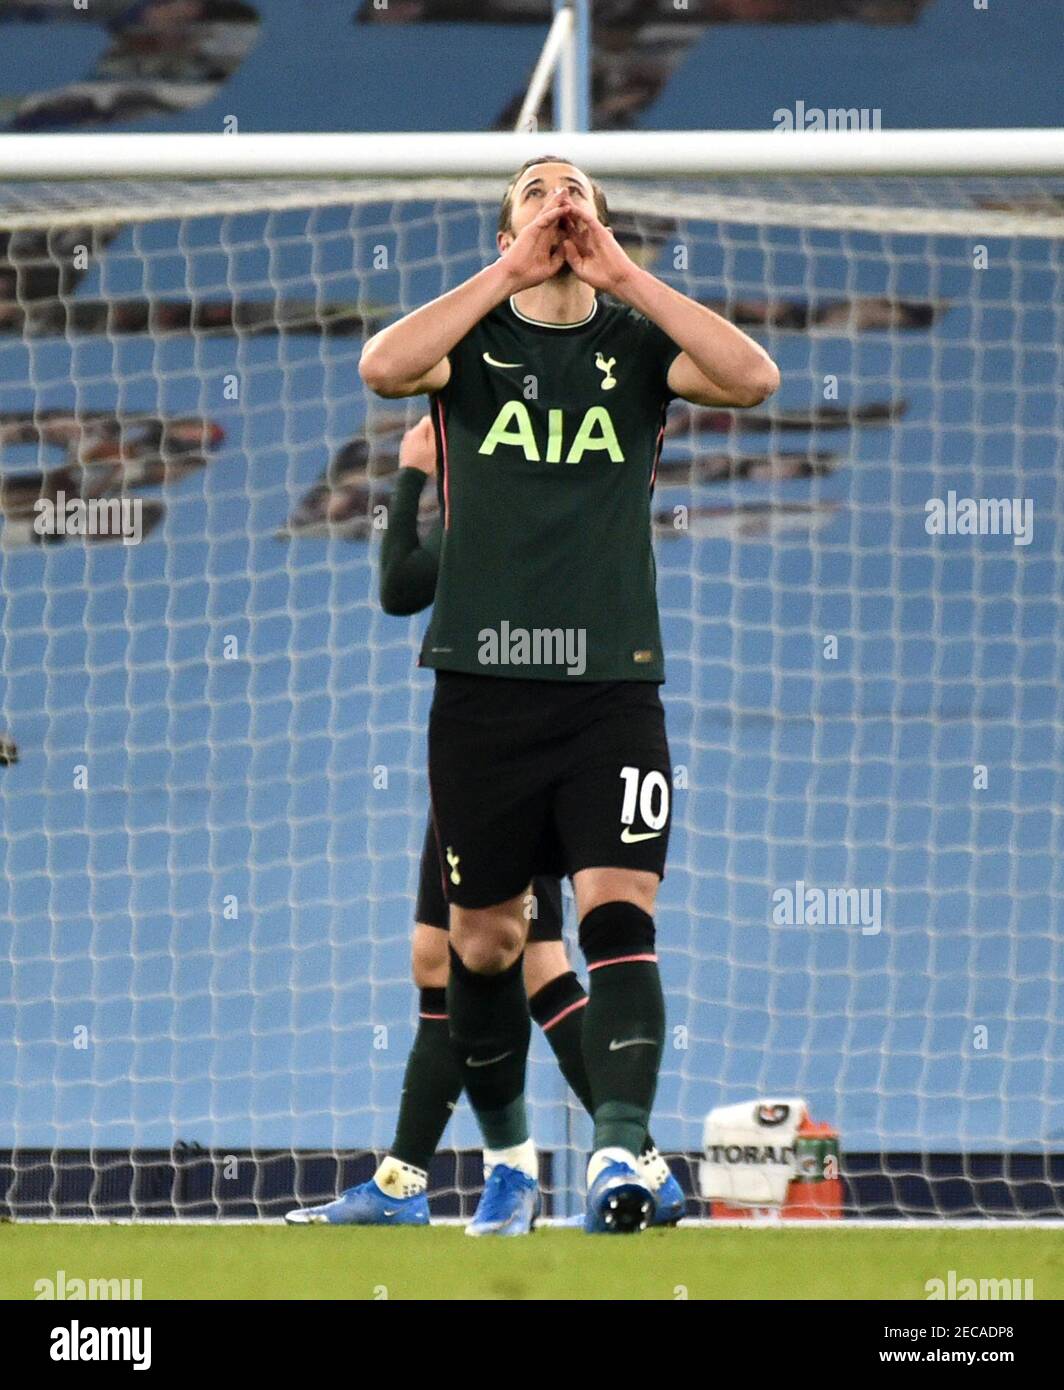 Harry Kane von Tottenham Hotspur hat sich geschlagen, nachdem Rodri von Manchester City während des Premier League-Spiels im Etihad Stadium in Manchester ihr erstes Tor erzielt hatte. Bilddatum: Samstag, 13. Februar 2021. Stockfoto